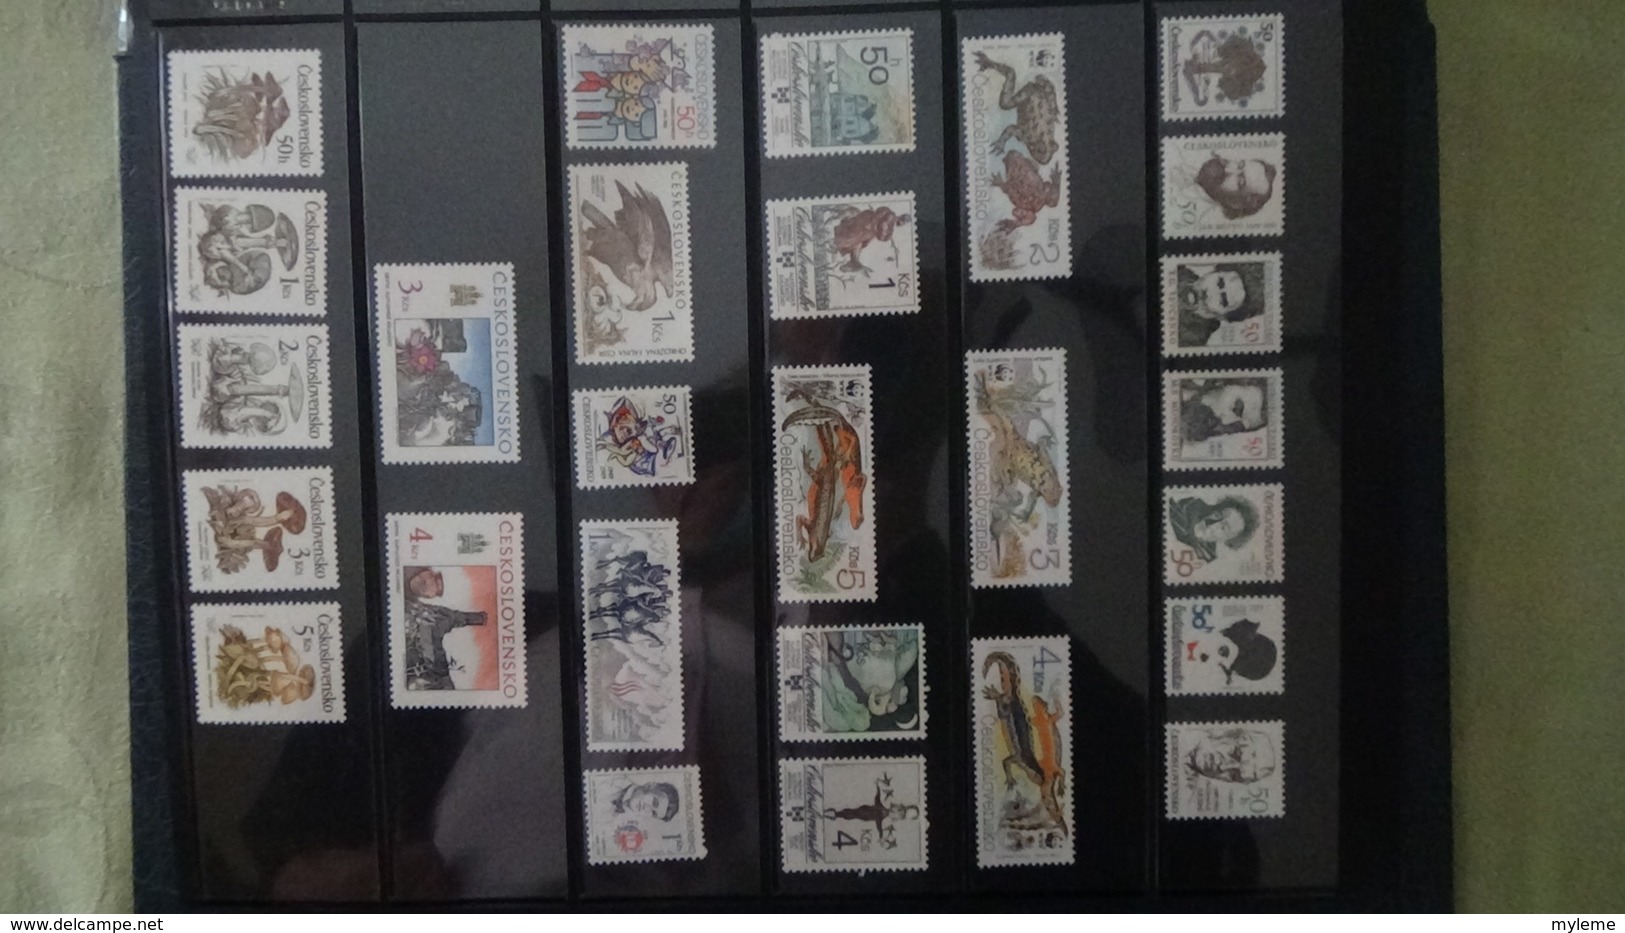 Grosse collection de République Tchèque ** en timbres et blocs. 5 de 5 Port offert dès 50 euros d'achats.